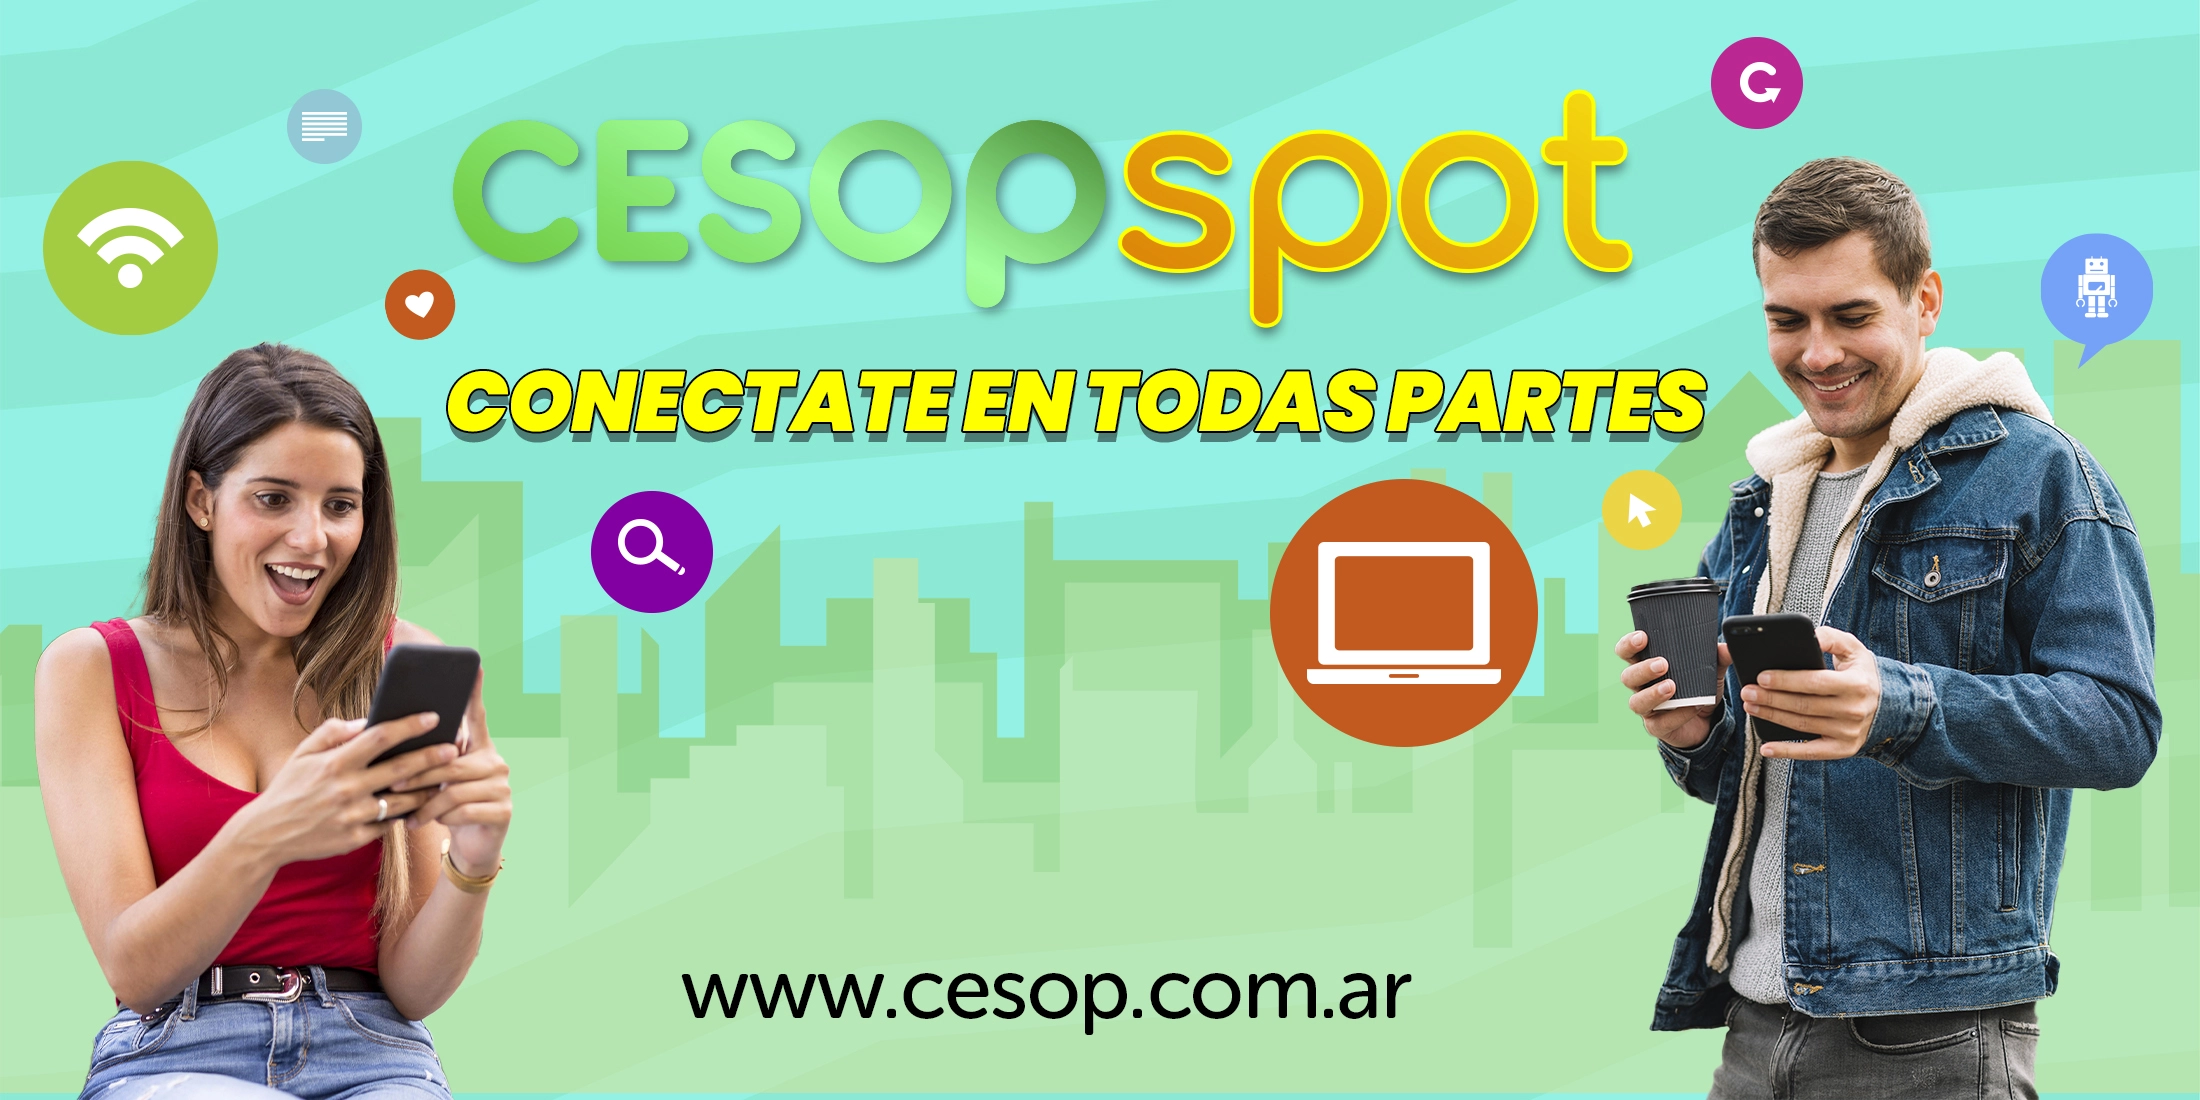 Cesop-Spot